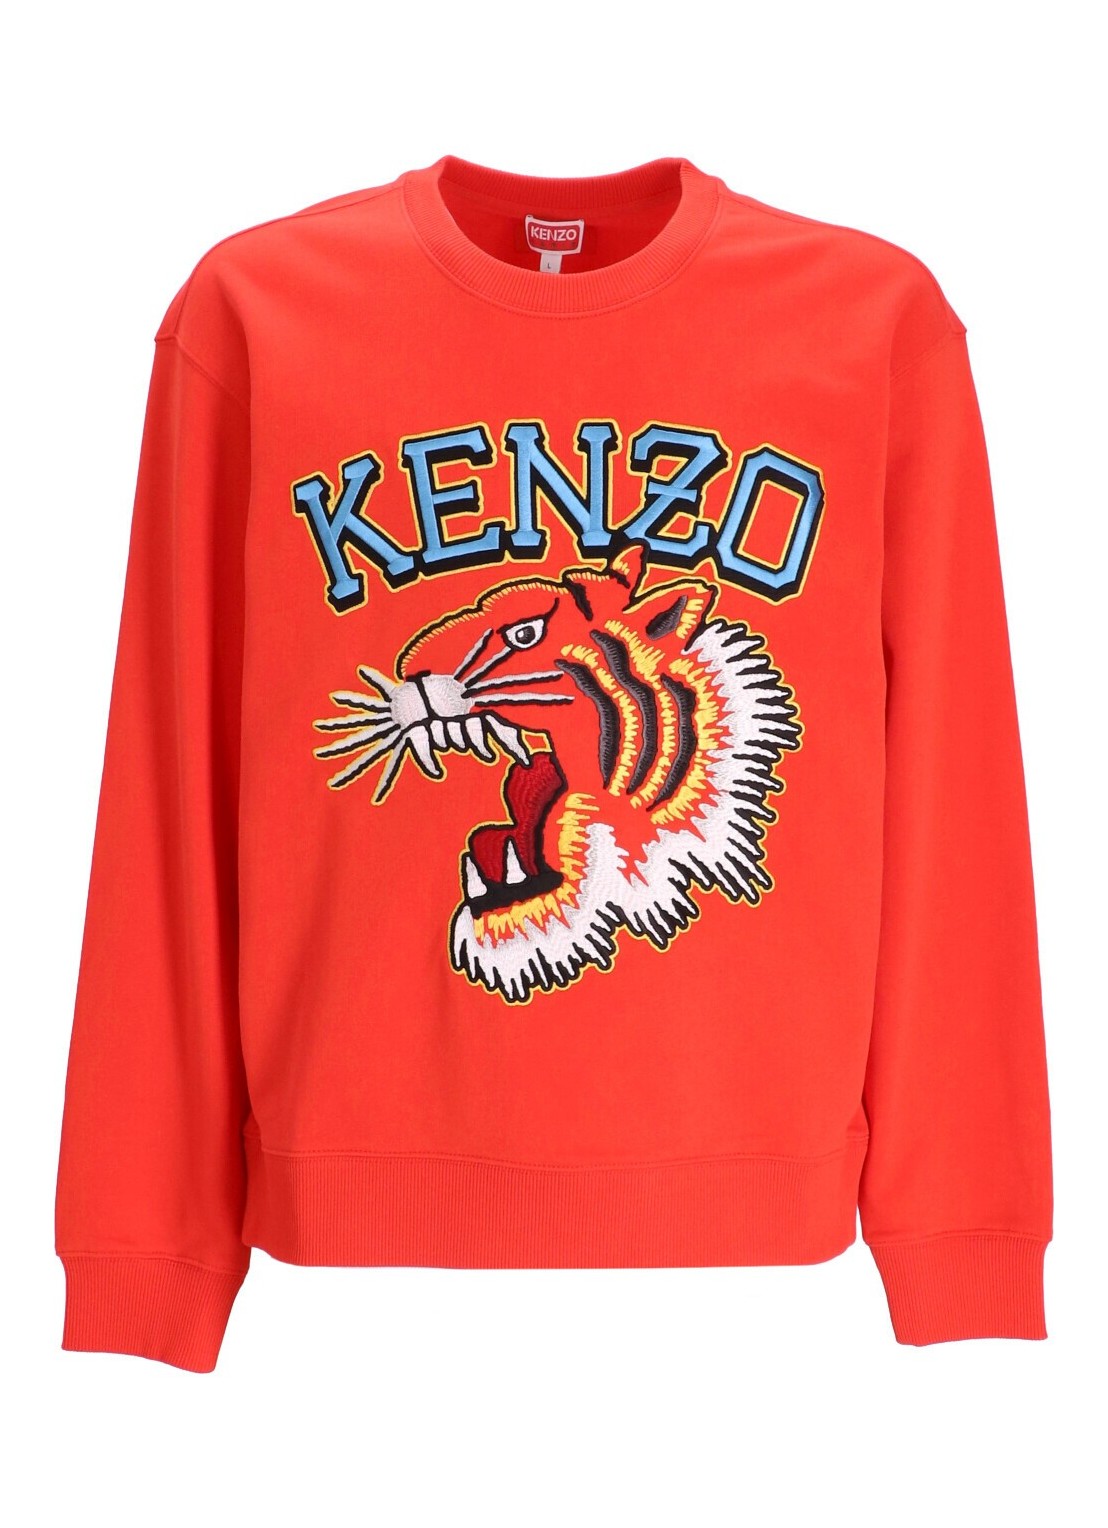 Sudadera kenzo sweater man tiger varsity classic sw fd65sw0494mf 21 talla S
 